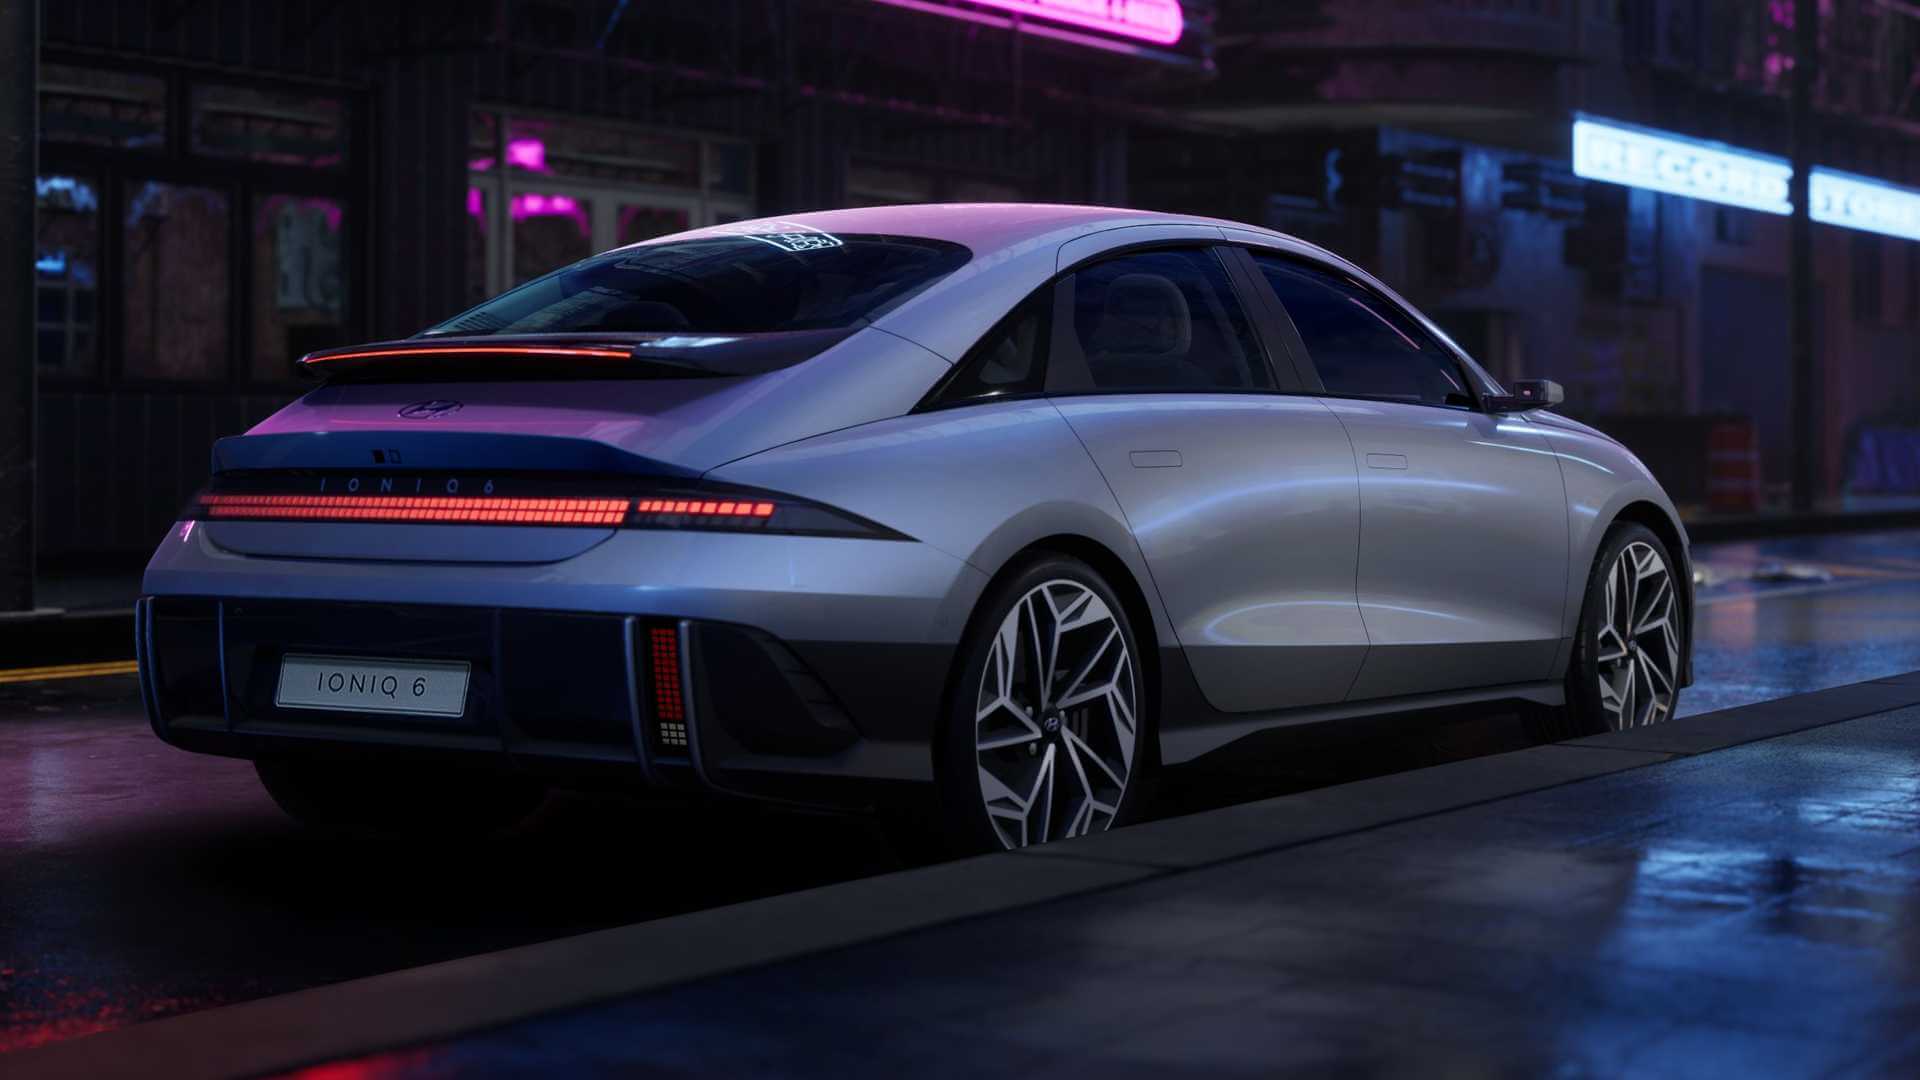 الكشف عن صور سيارة هيونداي ايونيك 6 الكهربائية الجديدة موديل 2023 (13)